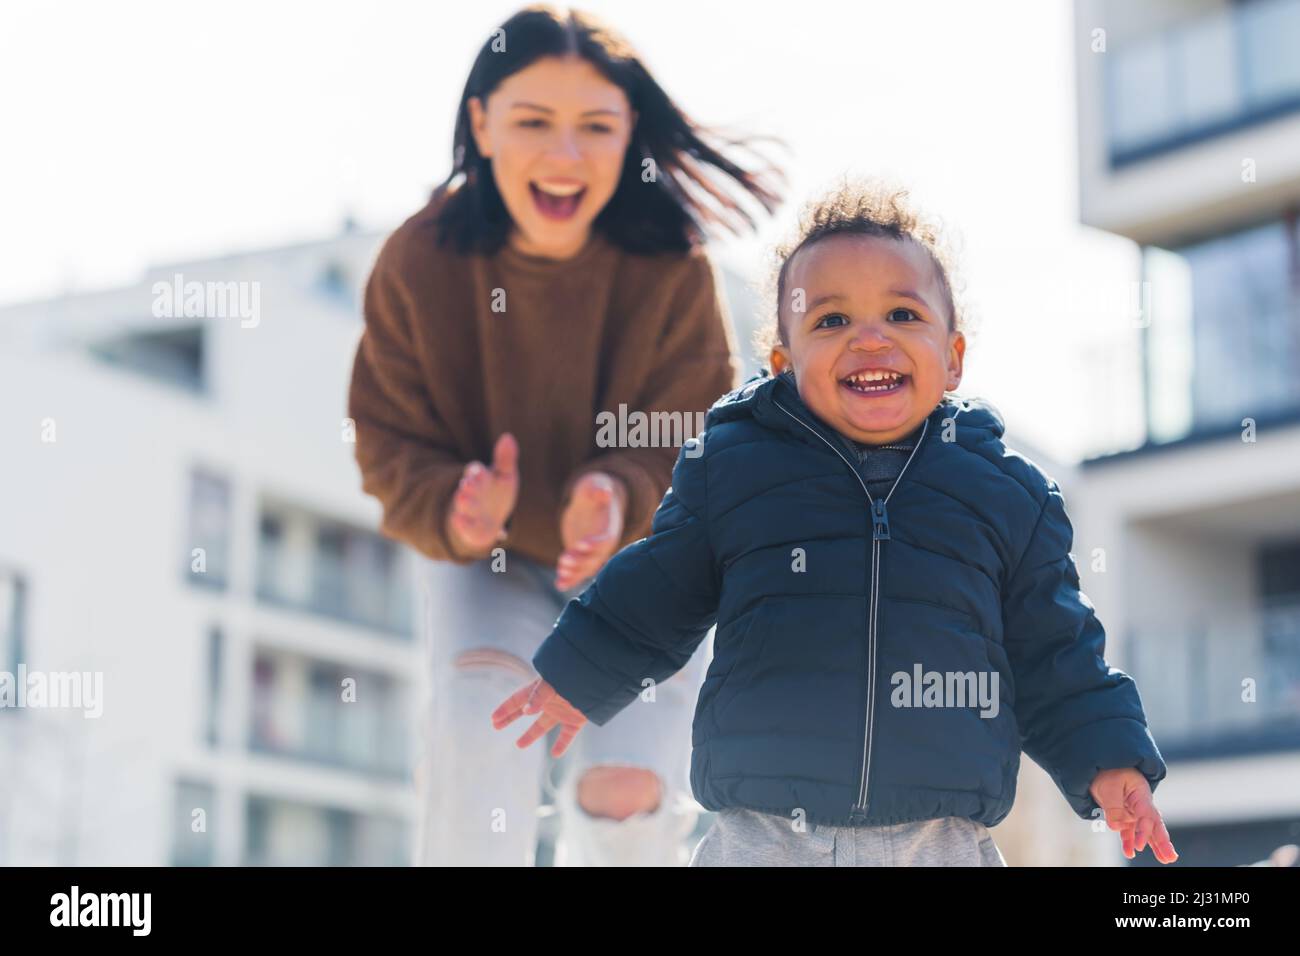 Ridendo bambino afroamericano con capelli ricci che corre davanti a sua madre che sta scattando sfondo urbano medio colpo. Foto di alta qualità Foto Stock